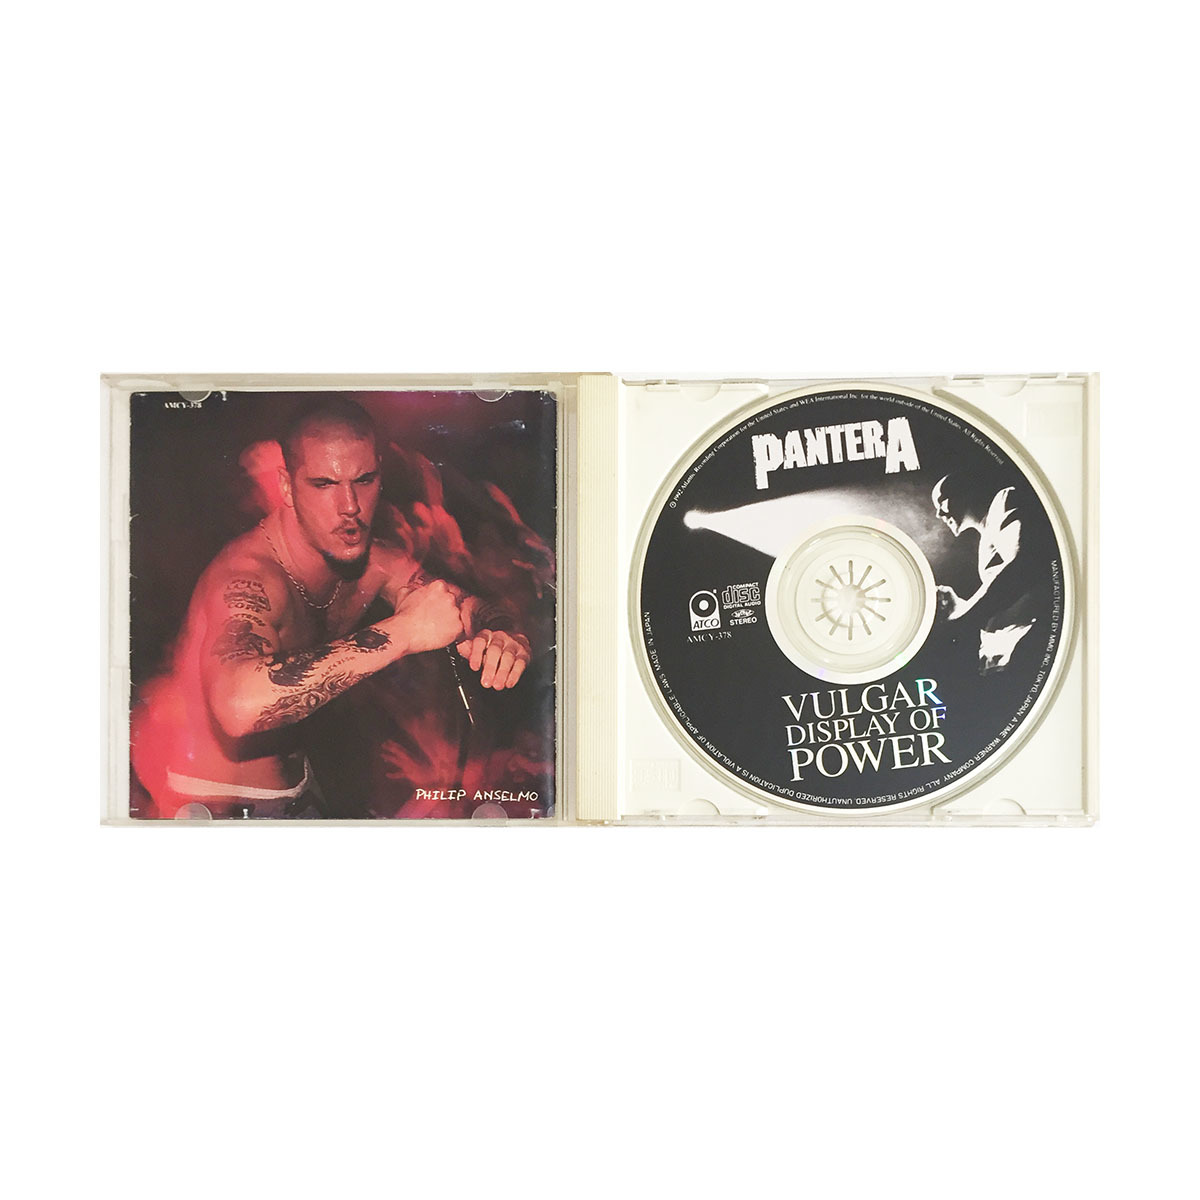 洋楽 CD パンテラ ヴァルガー ディスプレイ オブ パワー PANTERA Vulgar Display Of Power ヘヴィメタル パワーメタル ダイムバッグダレル